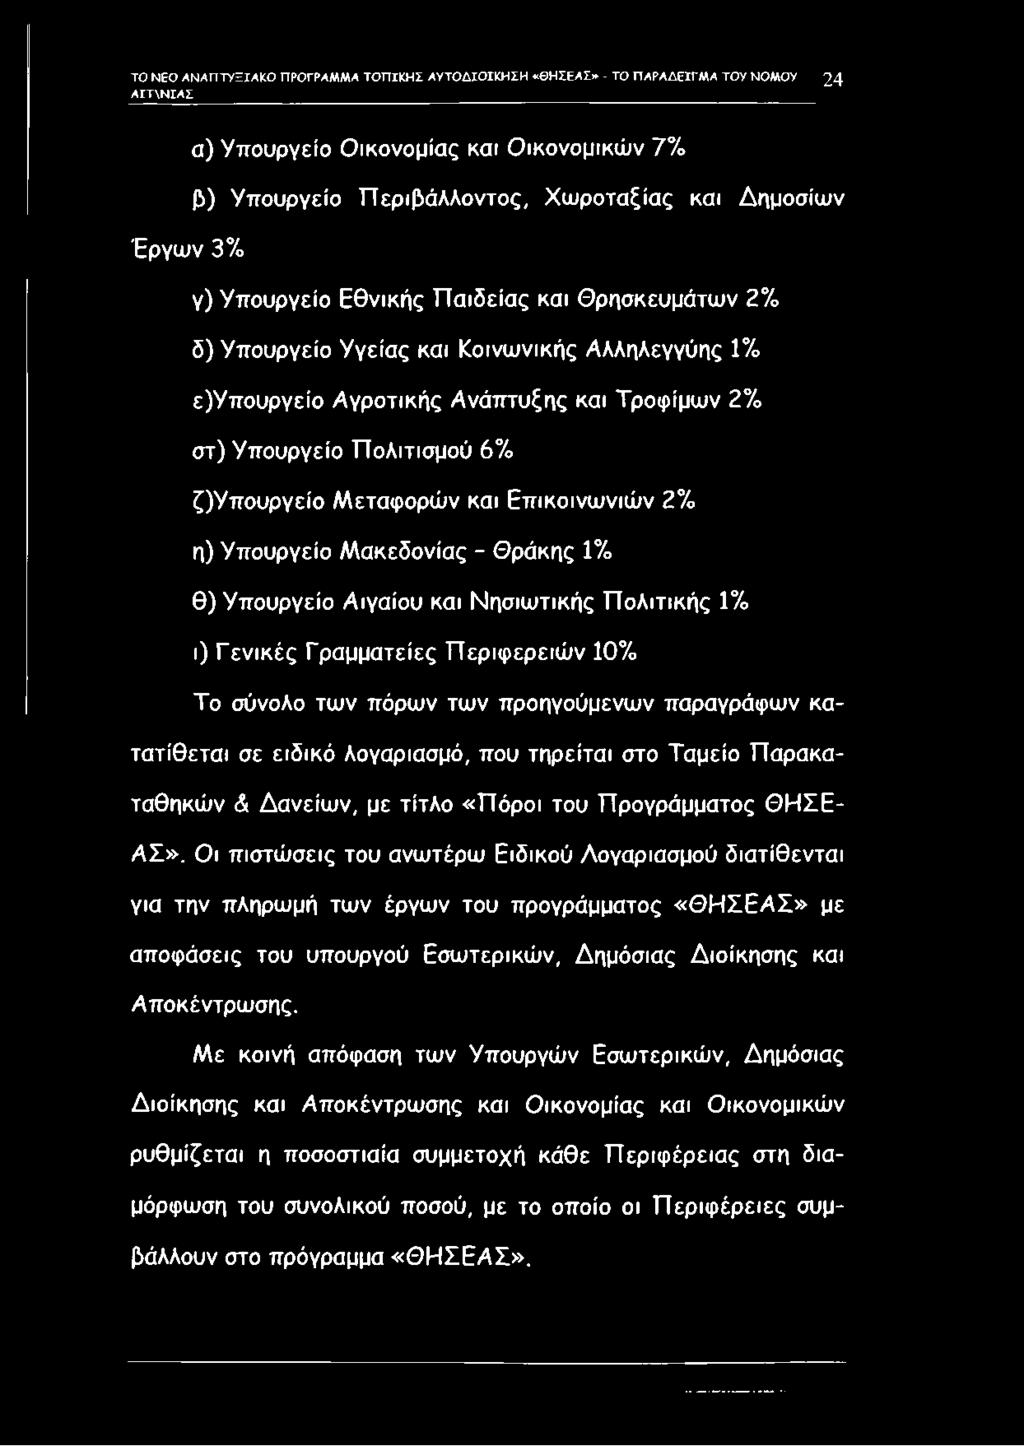 ζ)υπουργείο Μεταφορών και Επικοινωνιών 2% η) Υπουργείο Μακεδονίας - Θράκης 1% θ) Υπουργείο Αιγαίου και Νησιωτικής Πολιτικής 1% ι) Γενικές Γραμματείες Περιφερειών 10% Το σύνολο των πόρων των